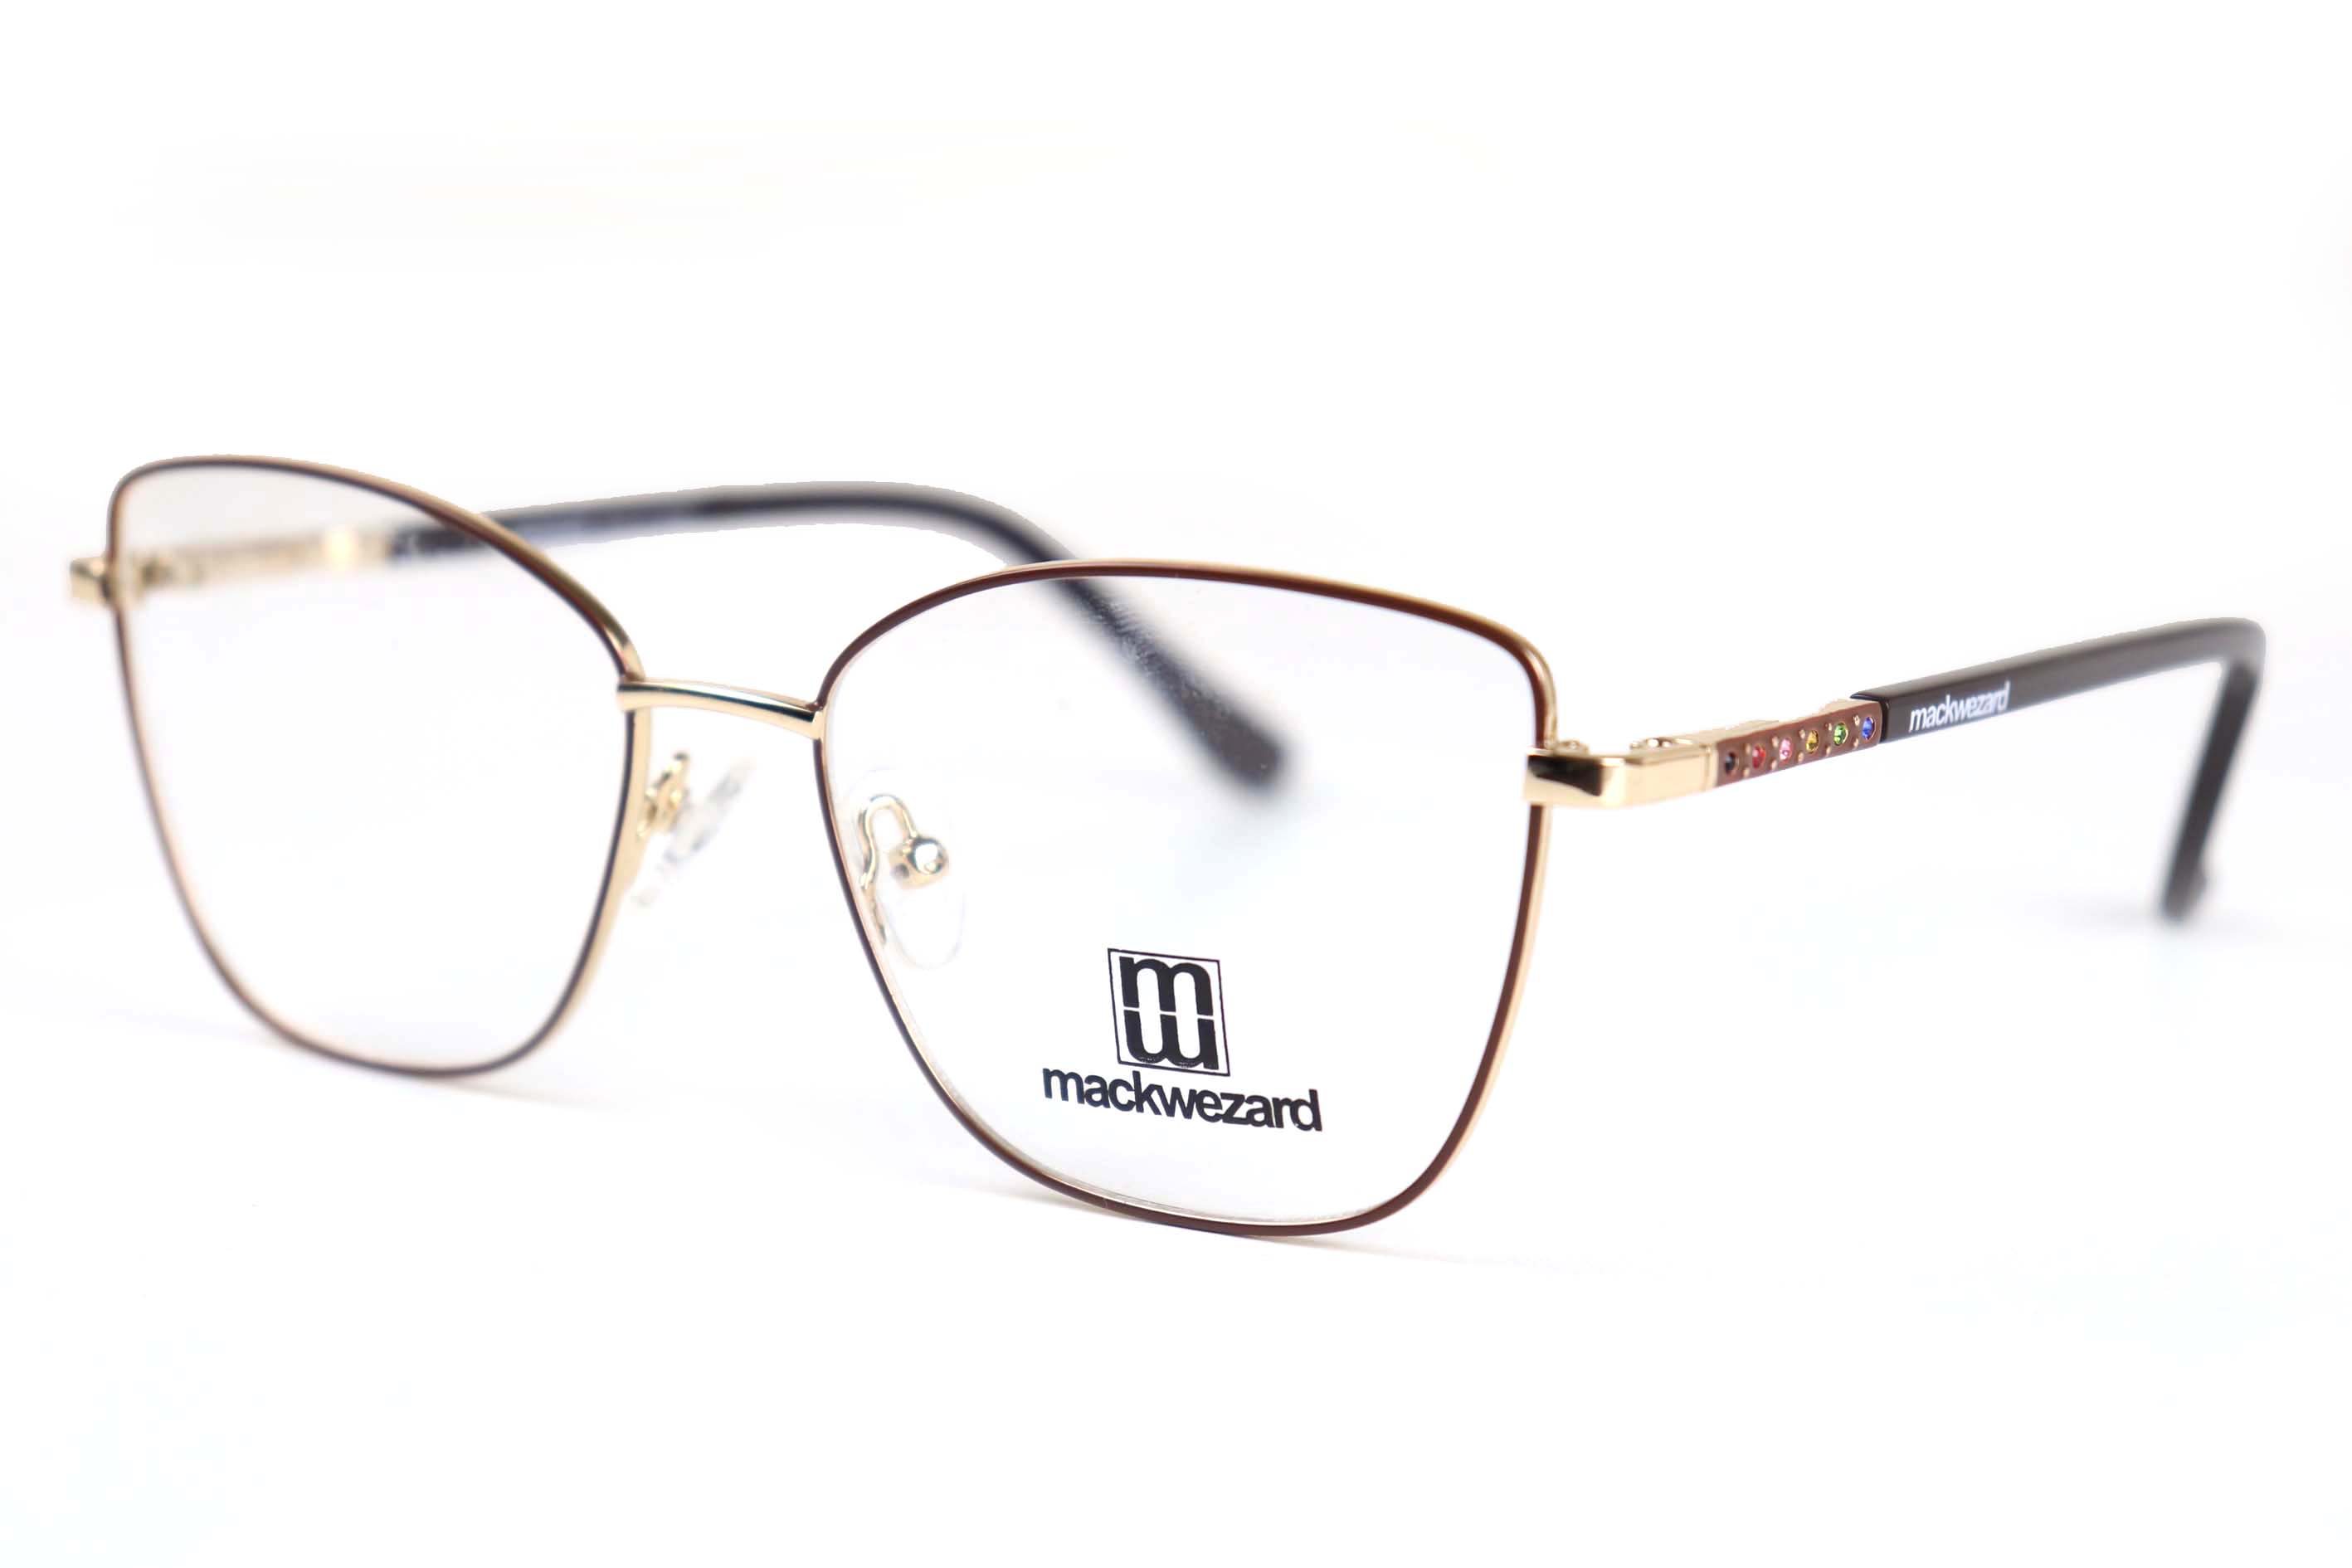 Mackwezard Eyeglasses- 1002-C3-54-18-140